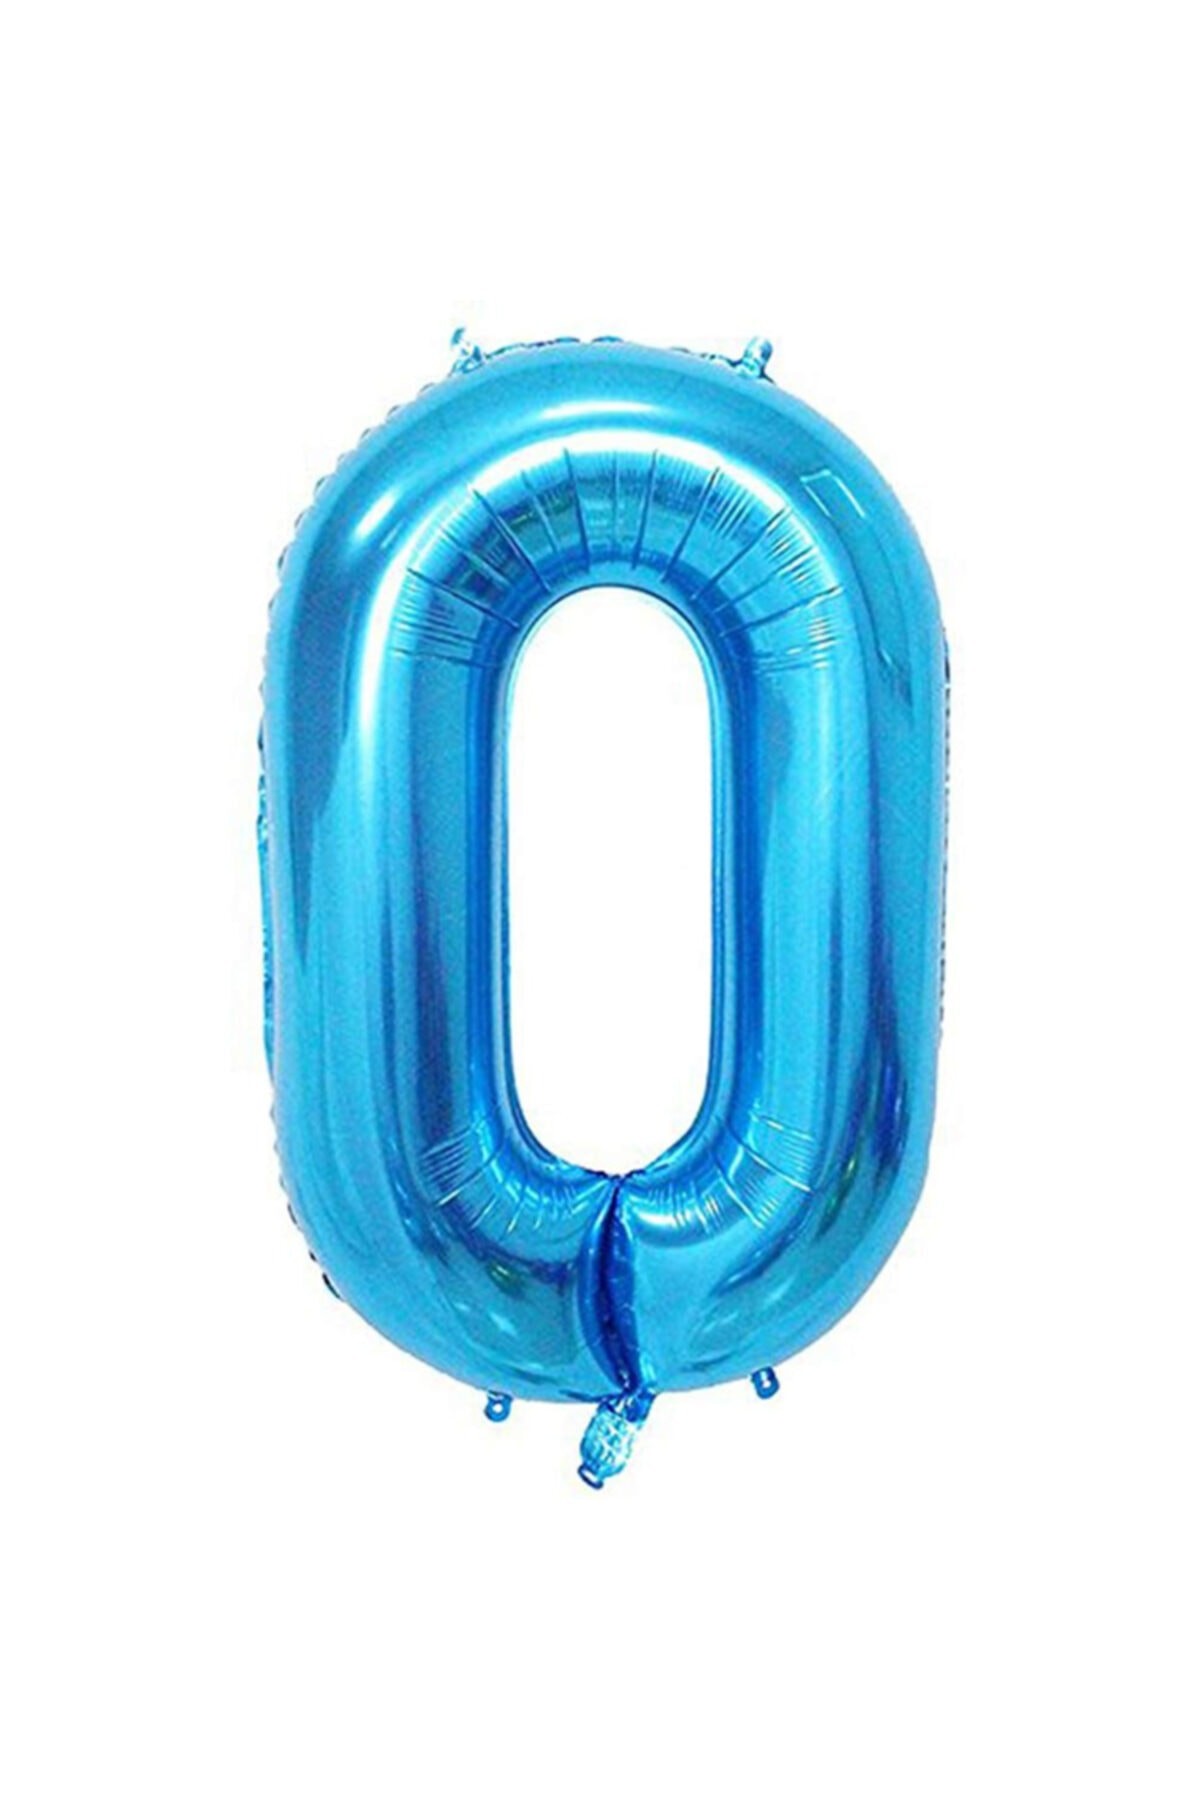 0 Rakamı Mavi Renk Folyo Balon 40 Inç(100 Cm)